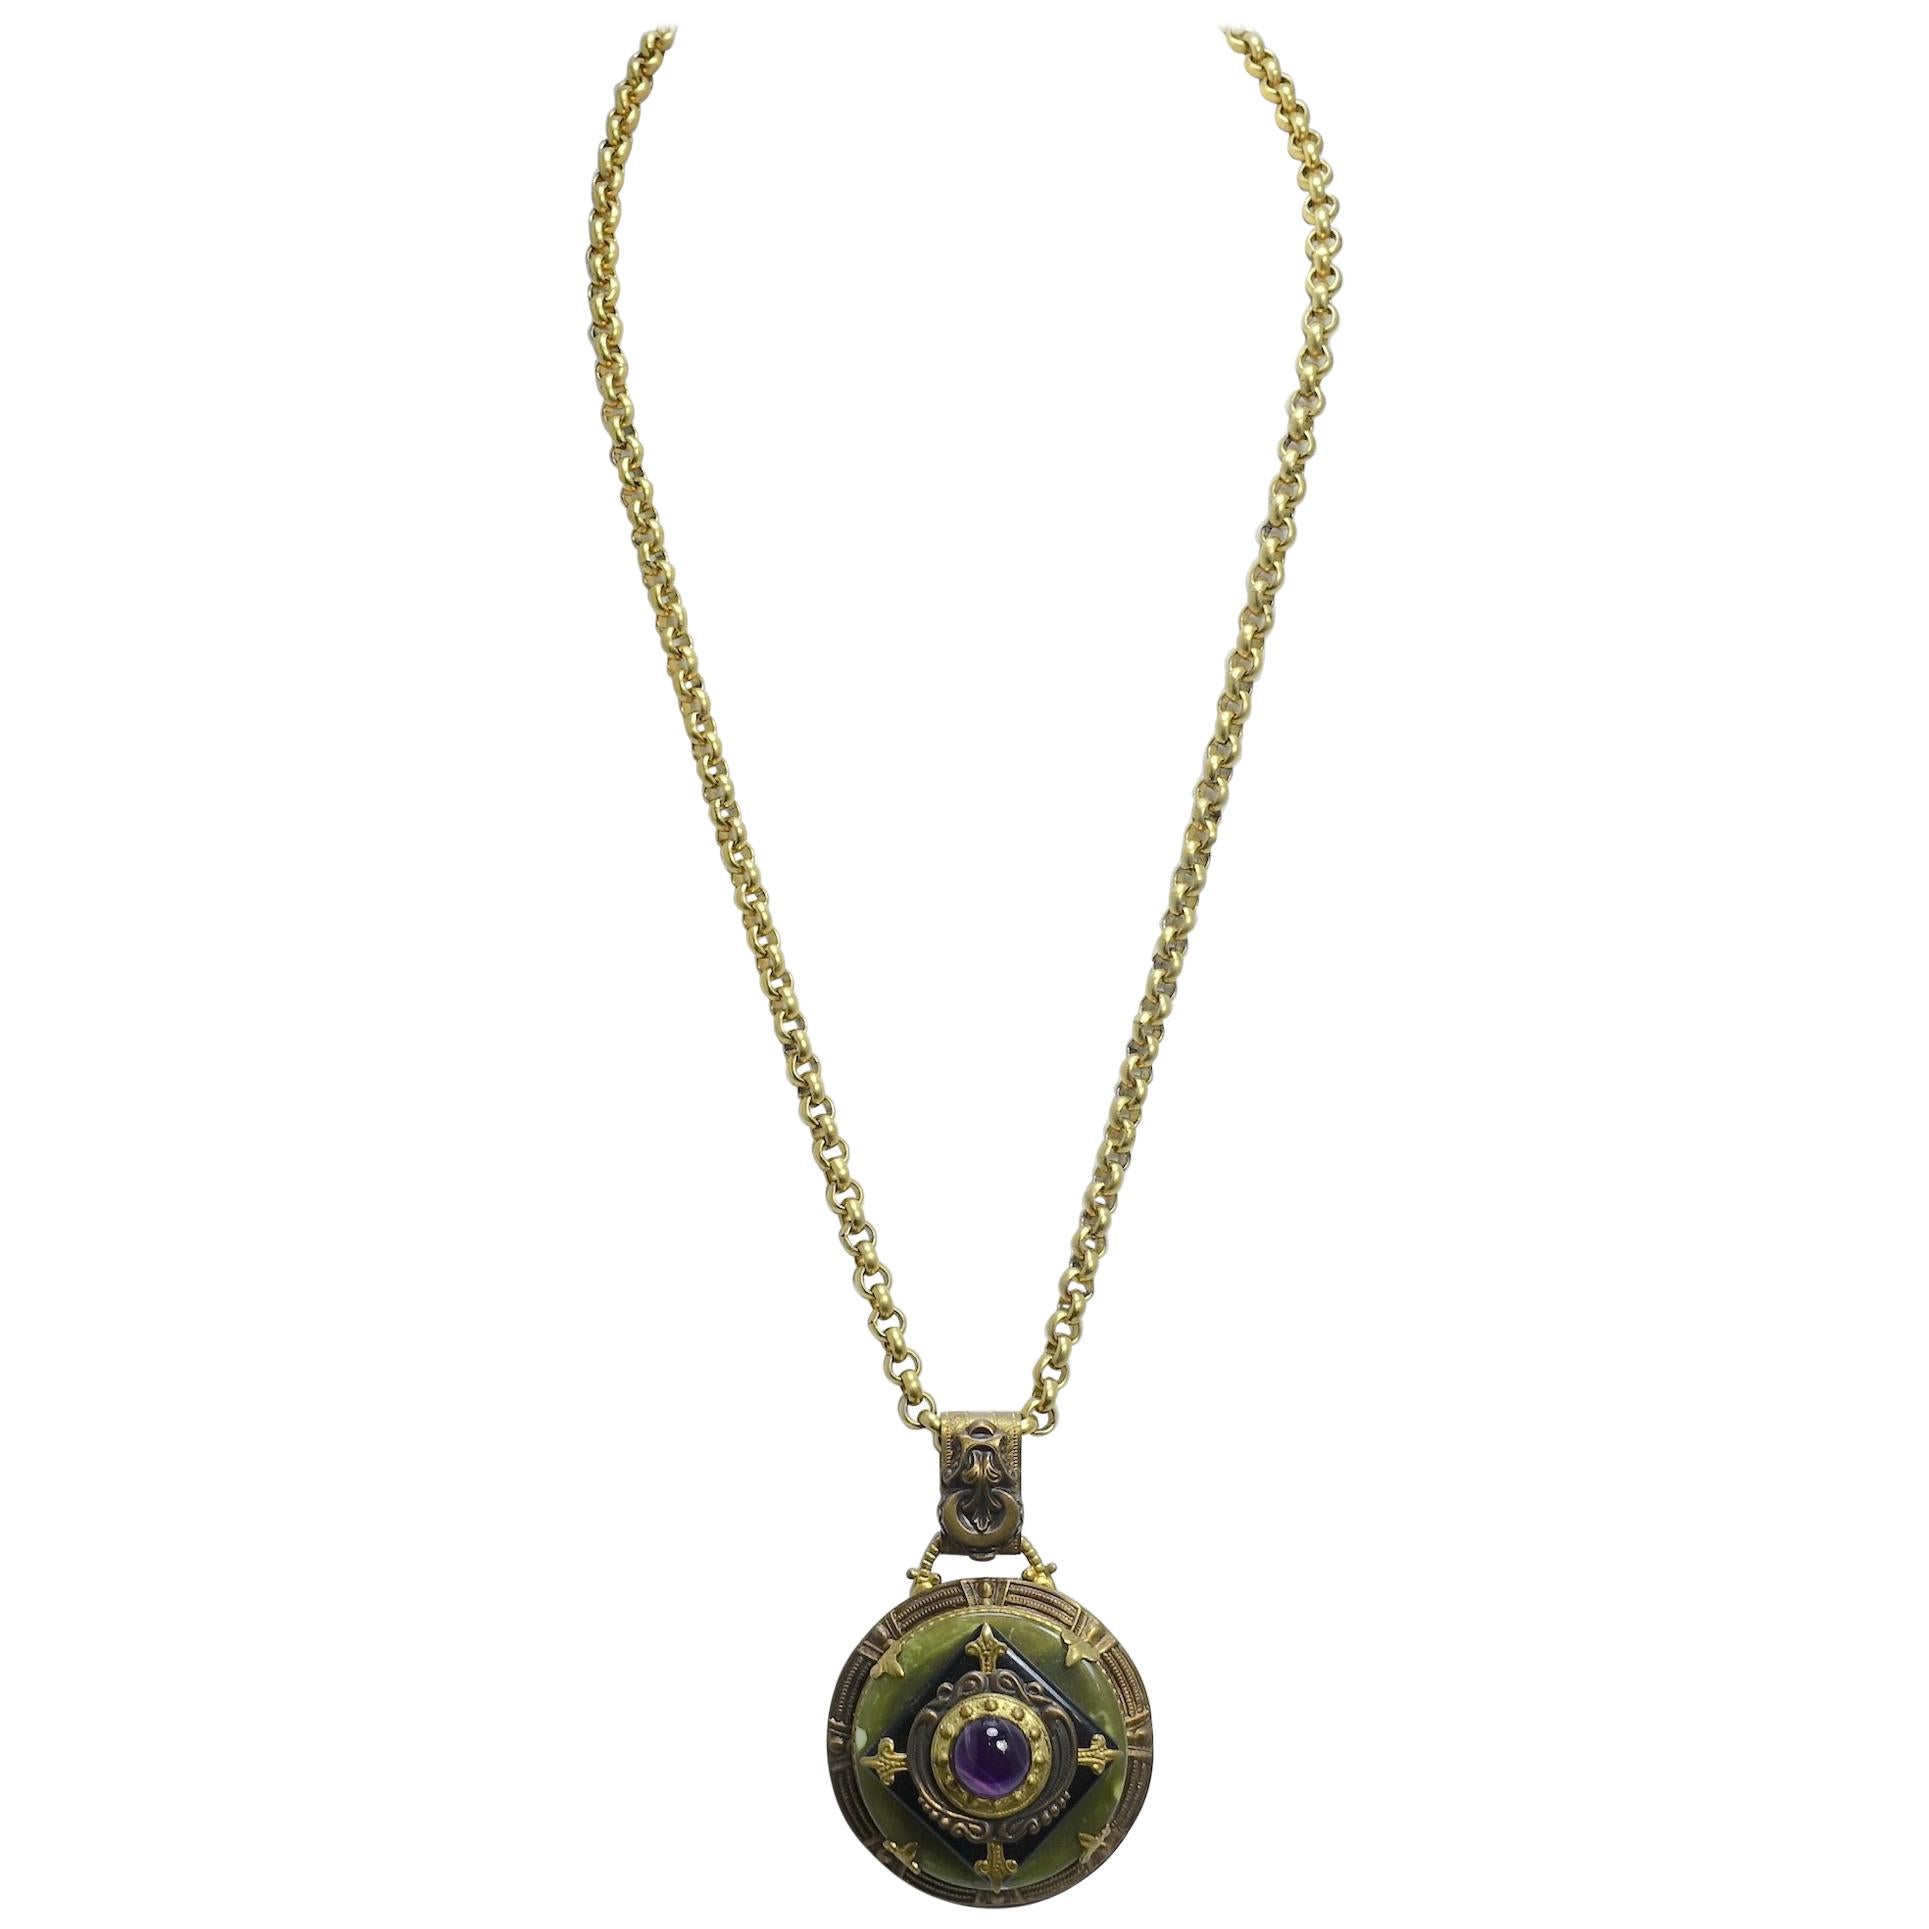 Vintage Art Deco Style Amethyst Pendant Necklace